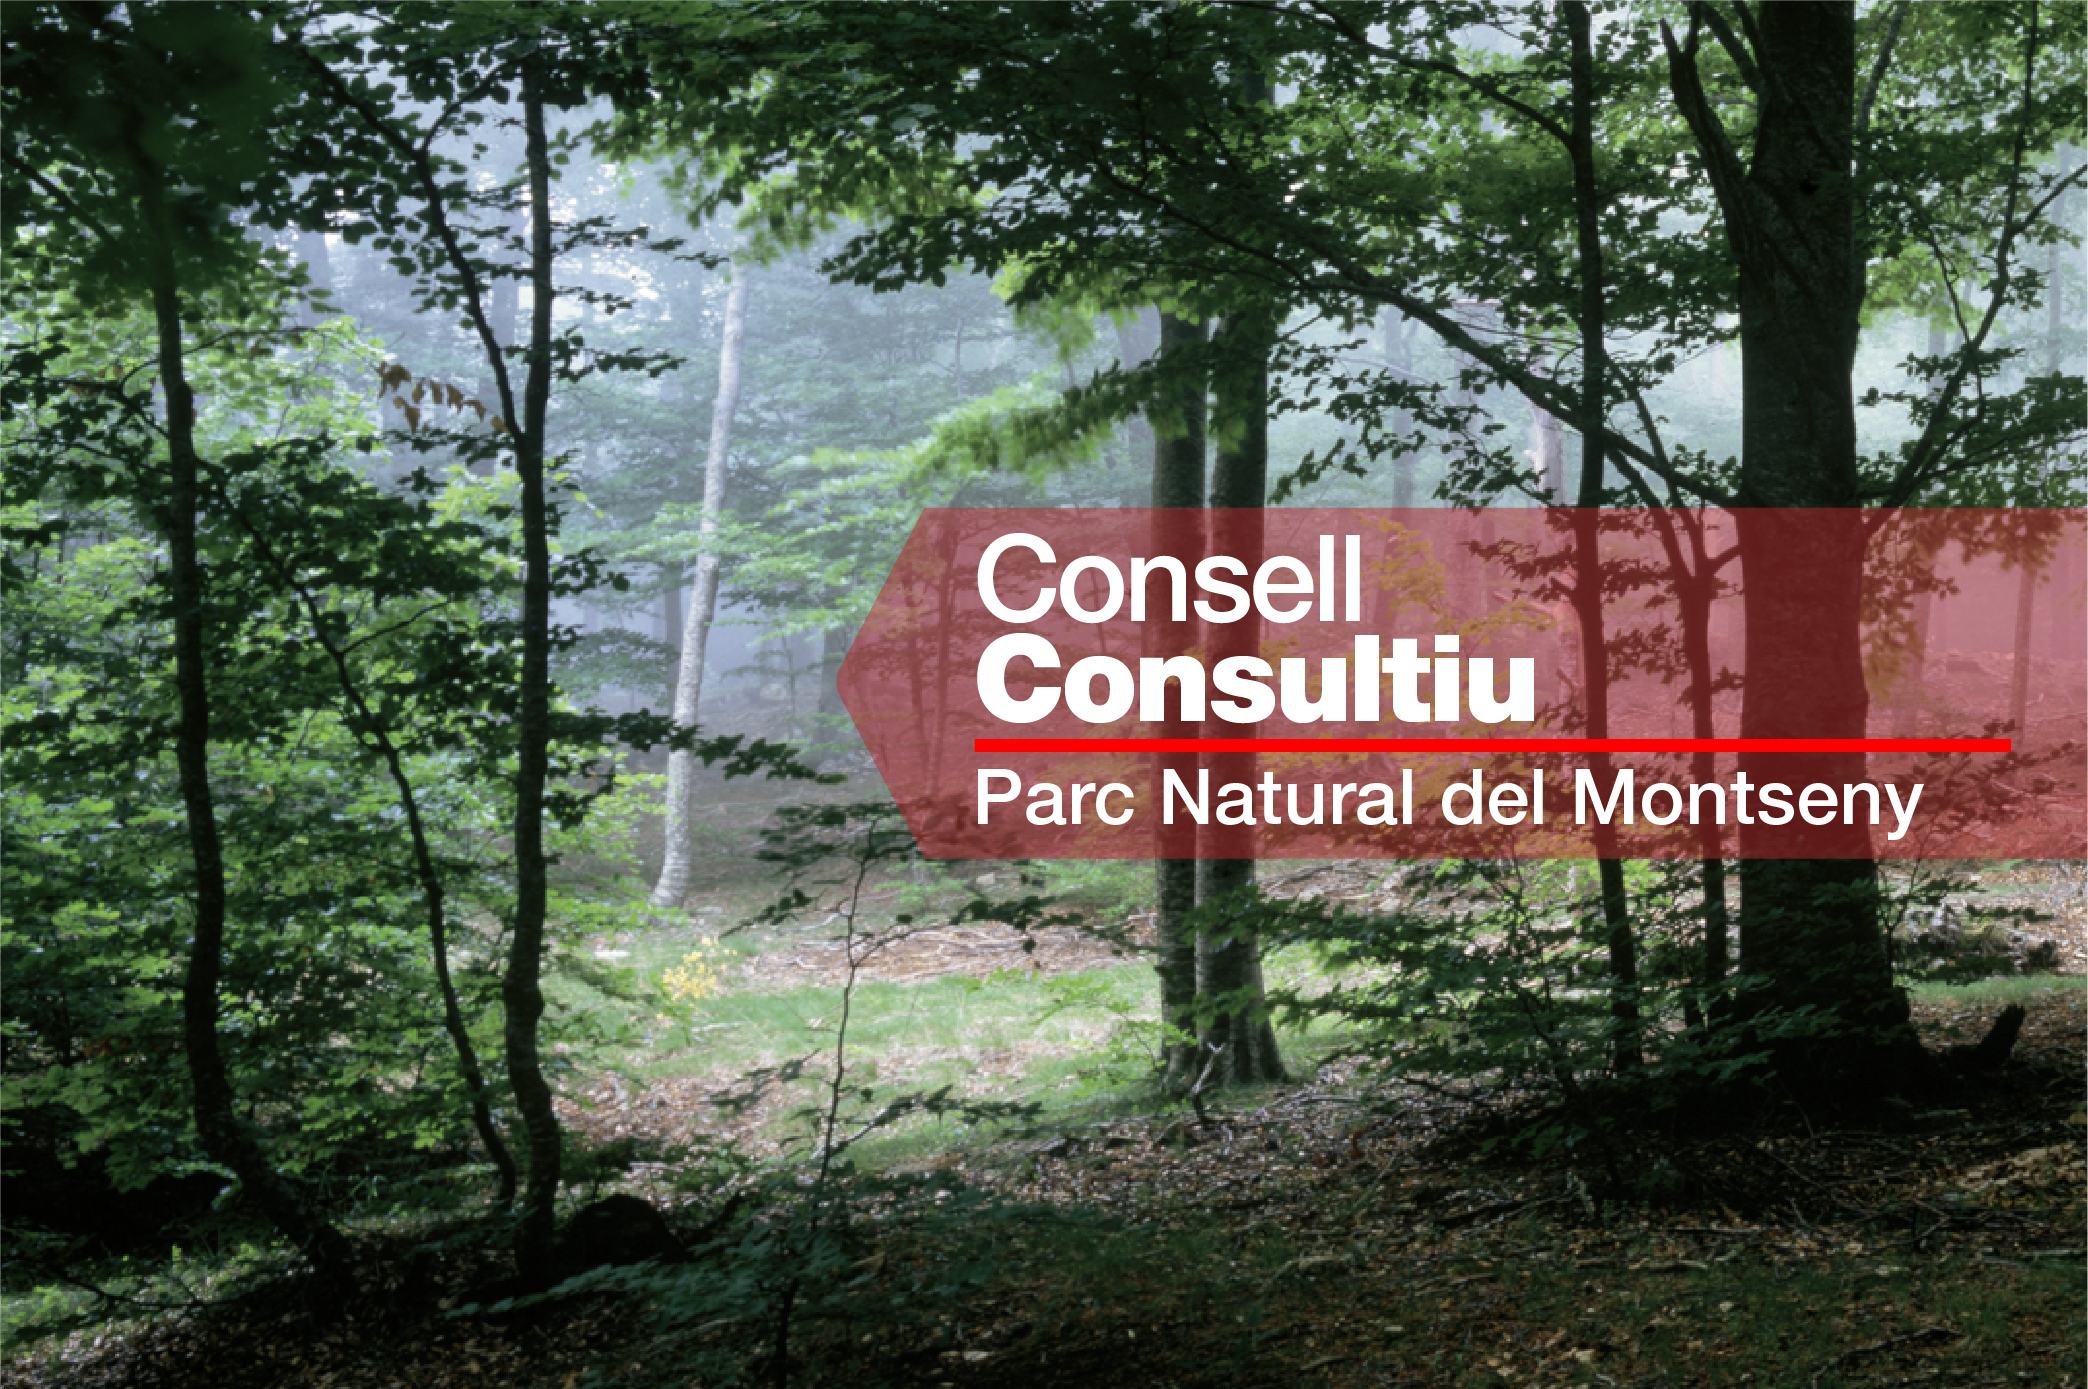 Consell Consultiu del Parc Natural del Montseny